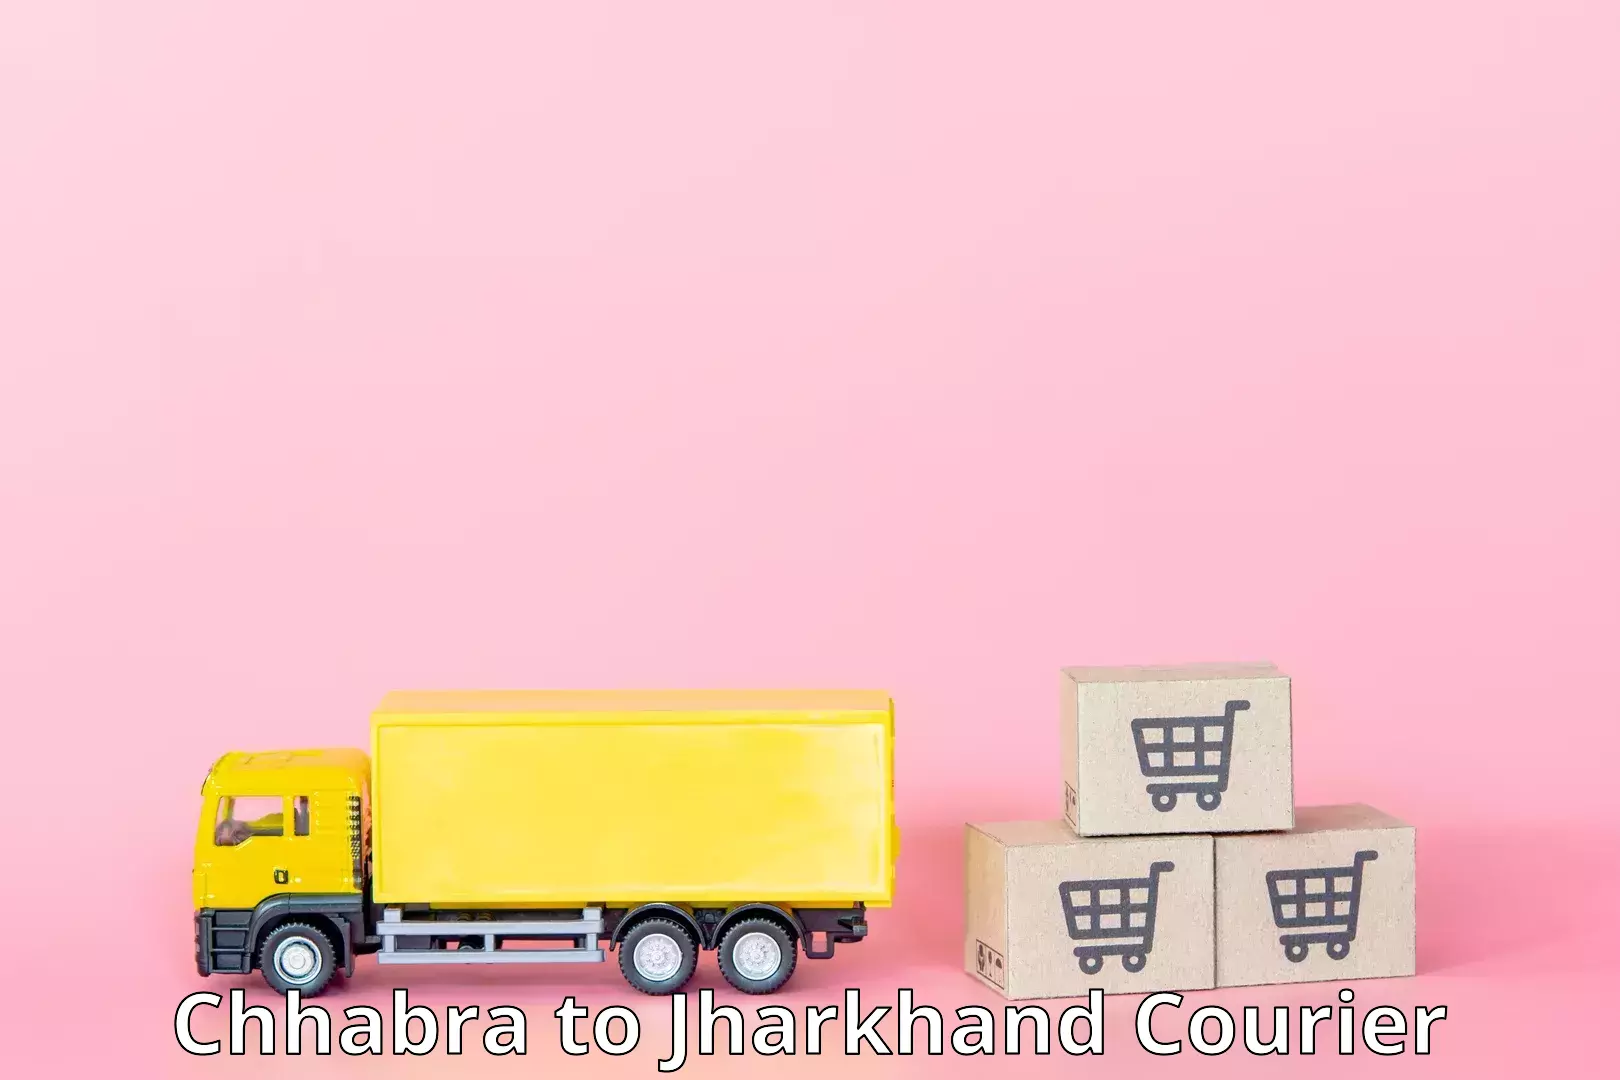 Urgent courier needs Chhabra to Chandwa